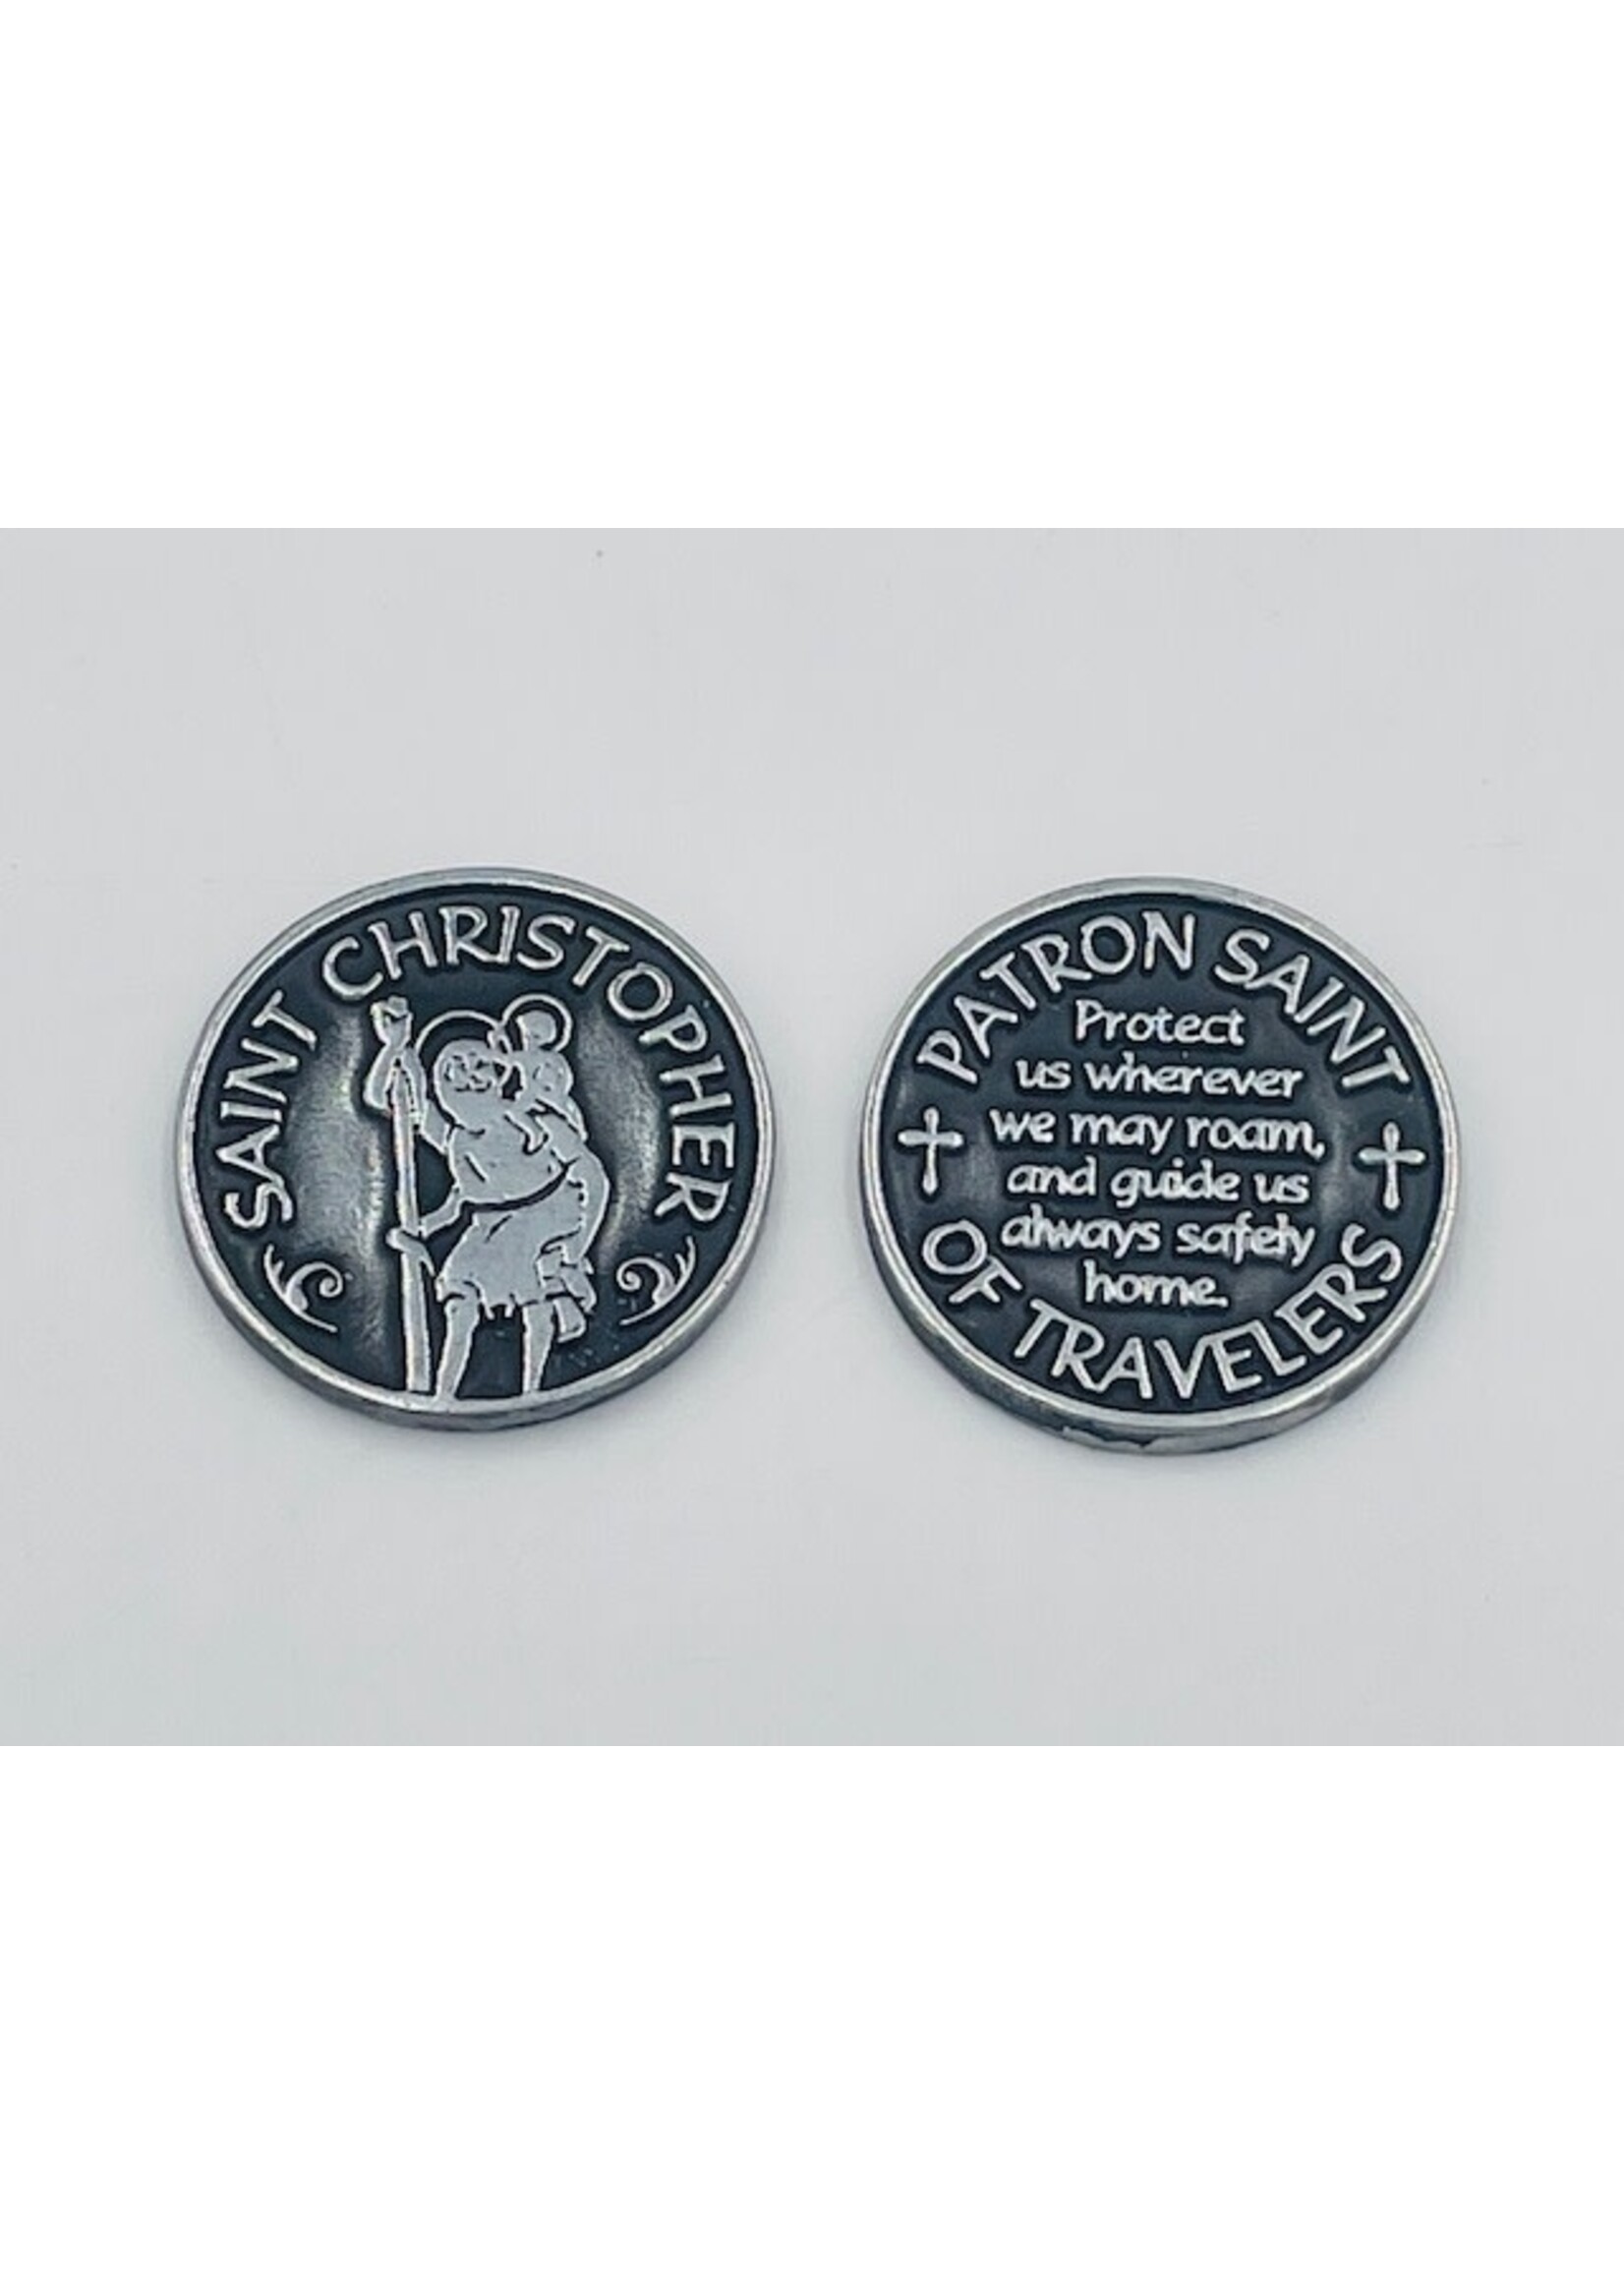 St Christopher Pewter Pocket Prayer token/coin